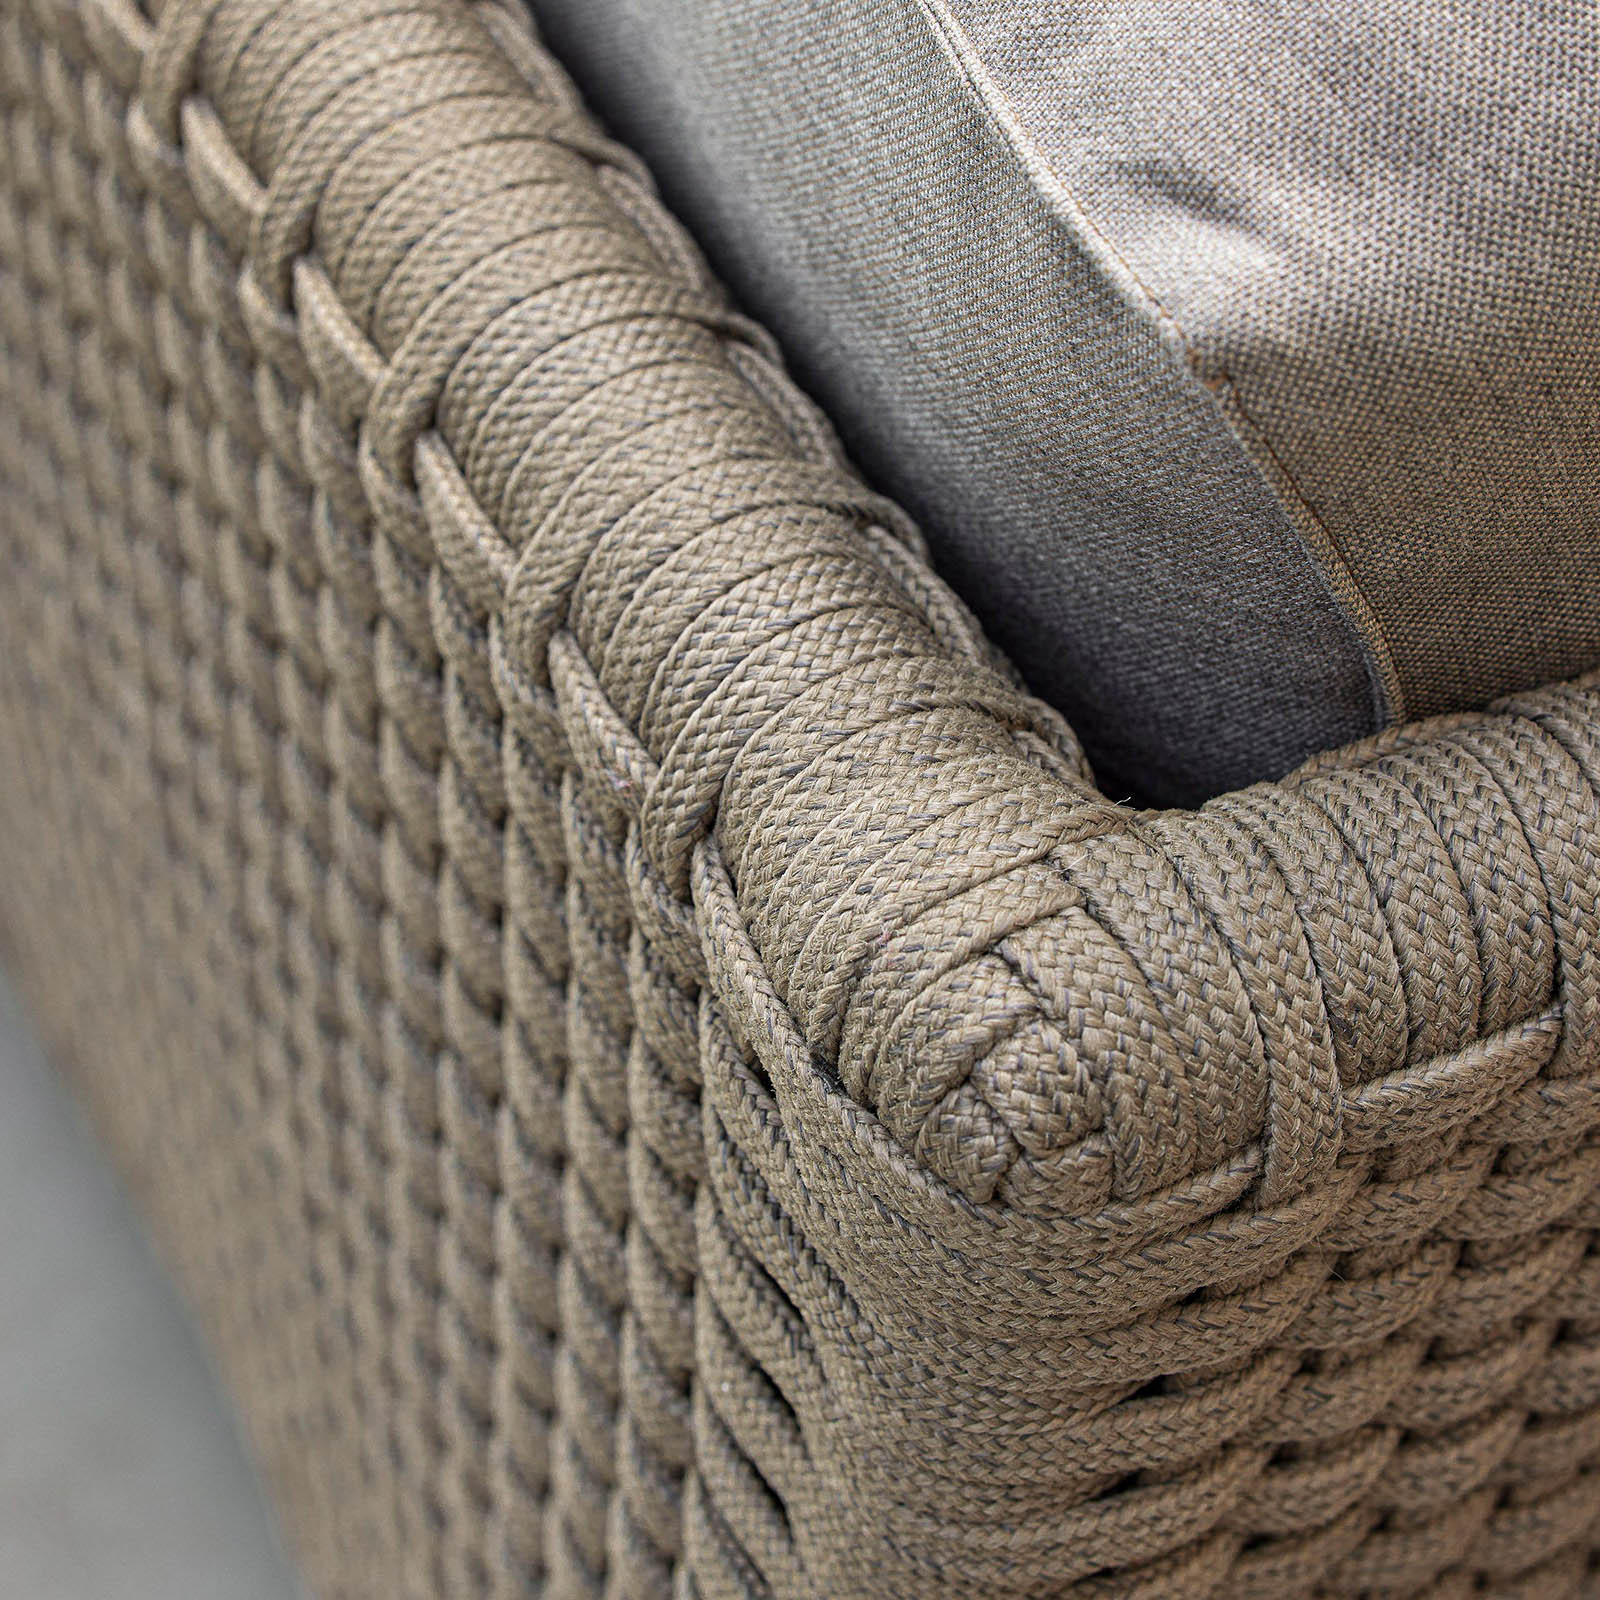 Diamond 2-Sitzer Sofa aus Cane-line Weave in Graphite mit Kissen aus Cane-line Natté in Grey